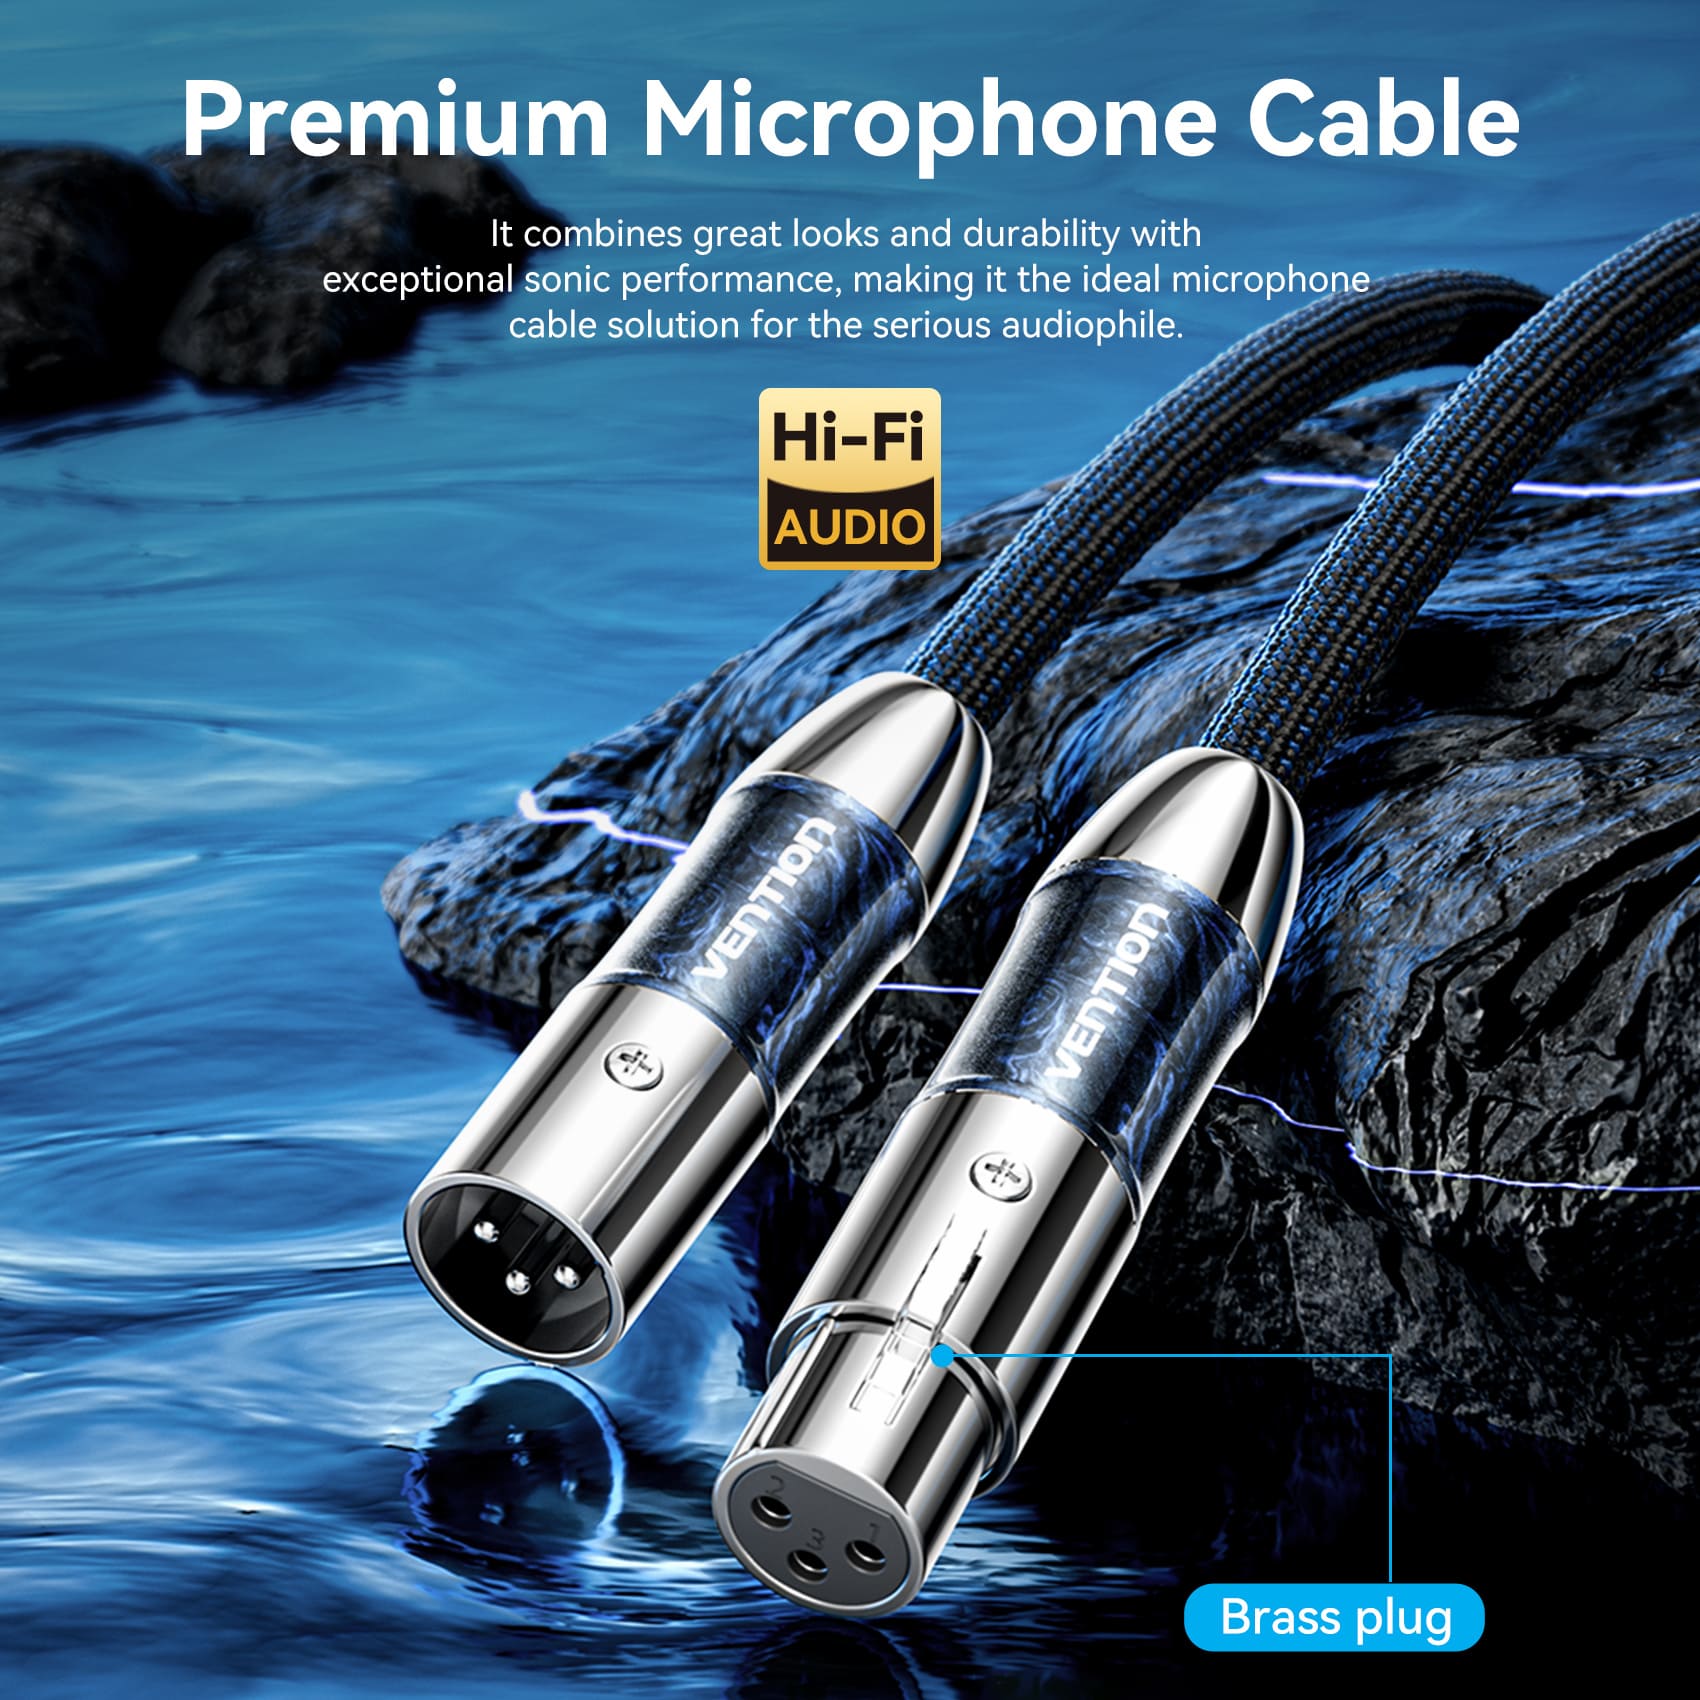 XLR Male to XLR Female Microphone Cable (Hi-Fi)